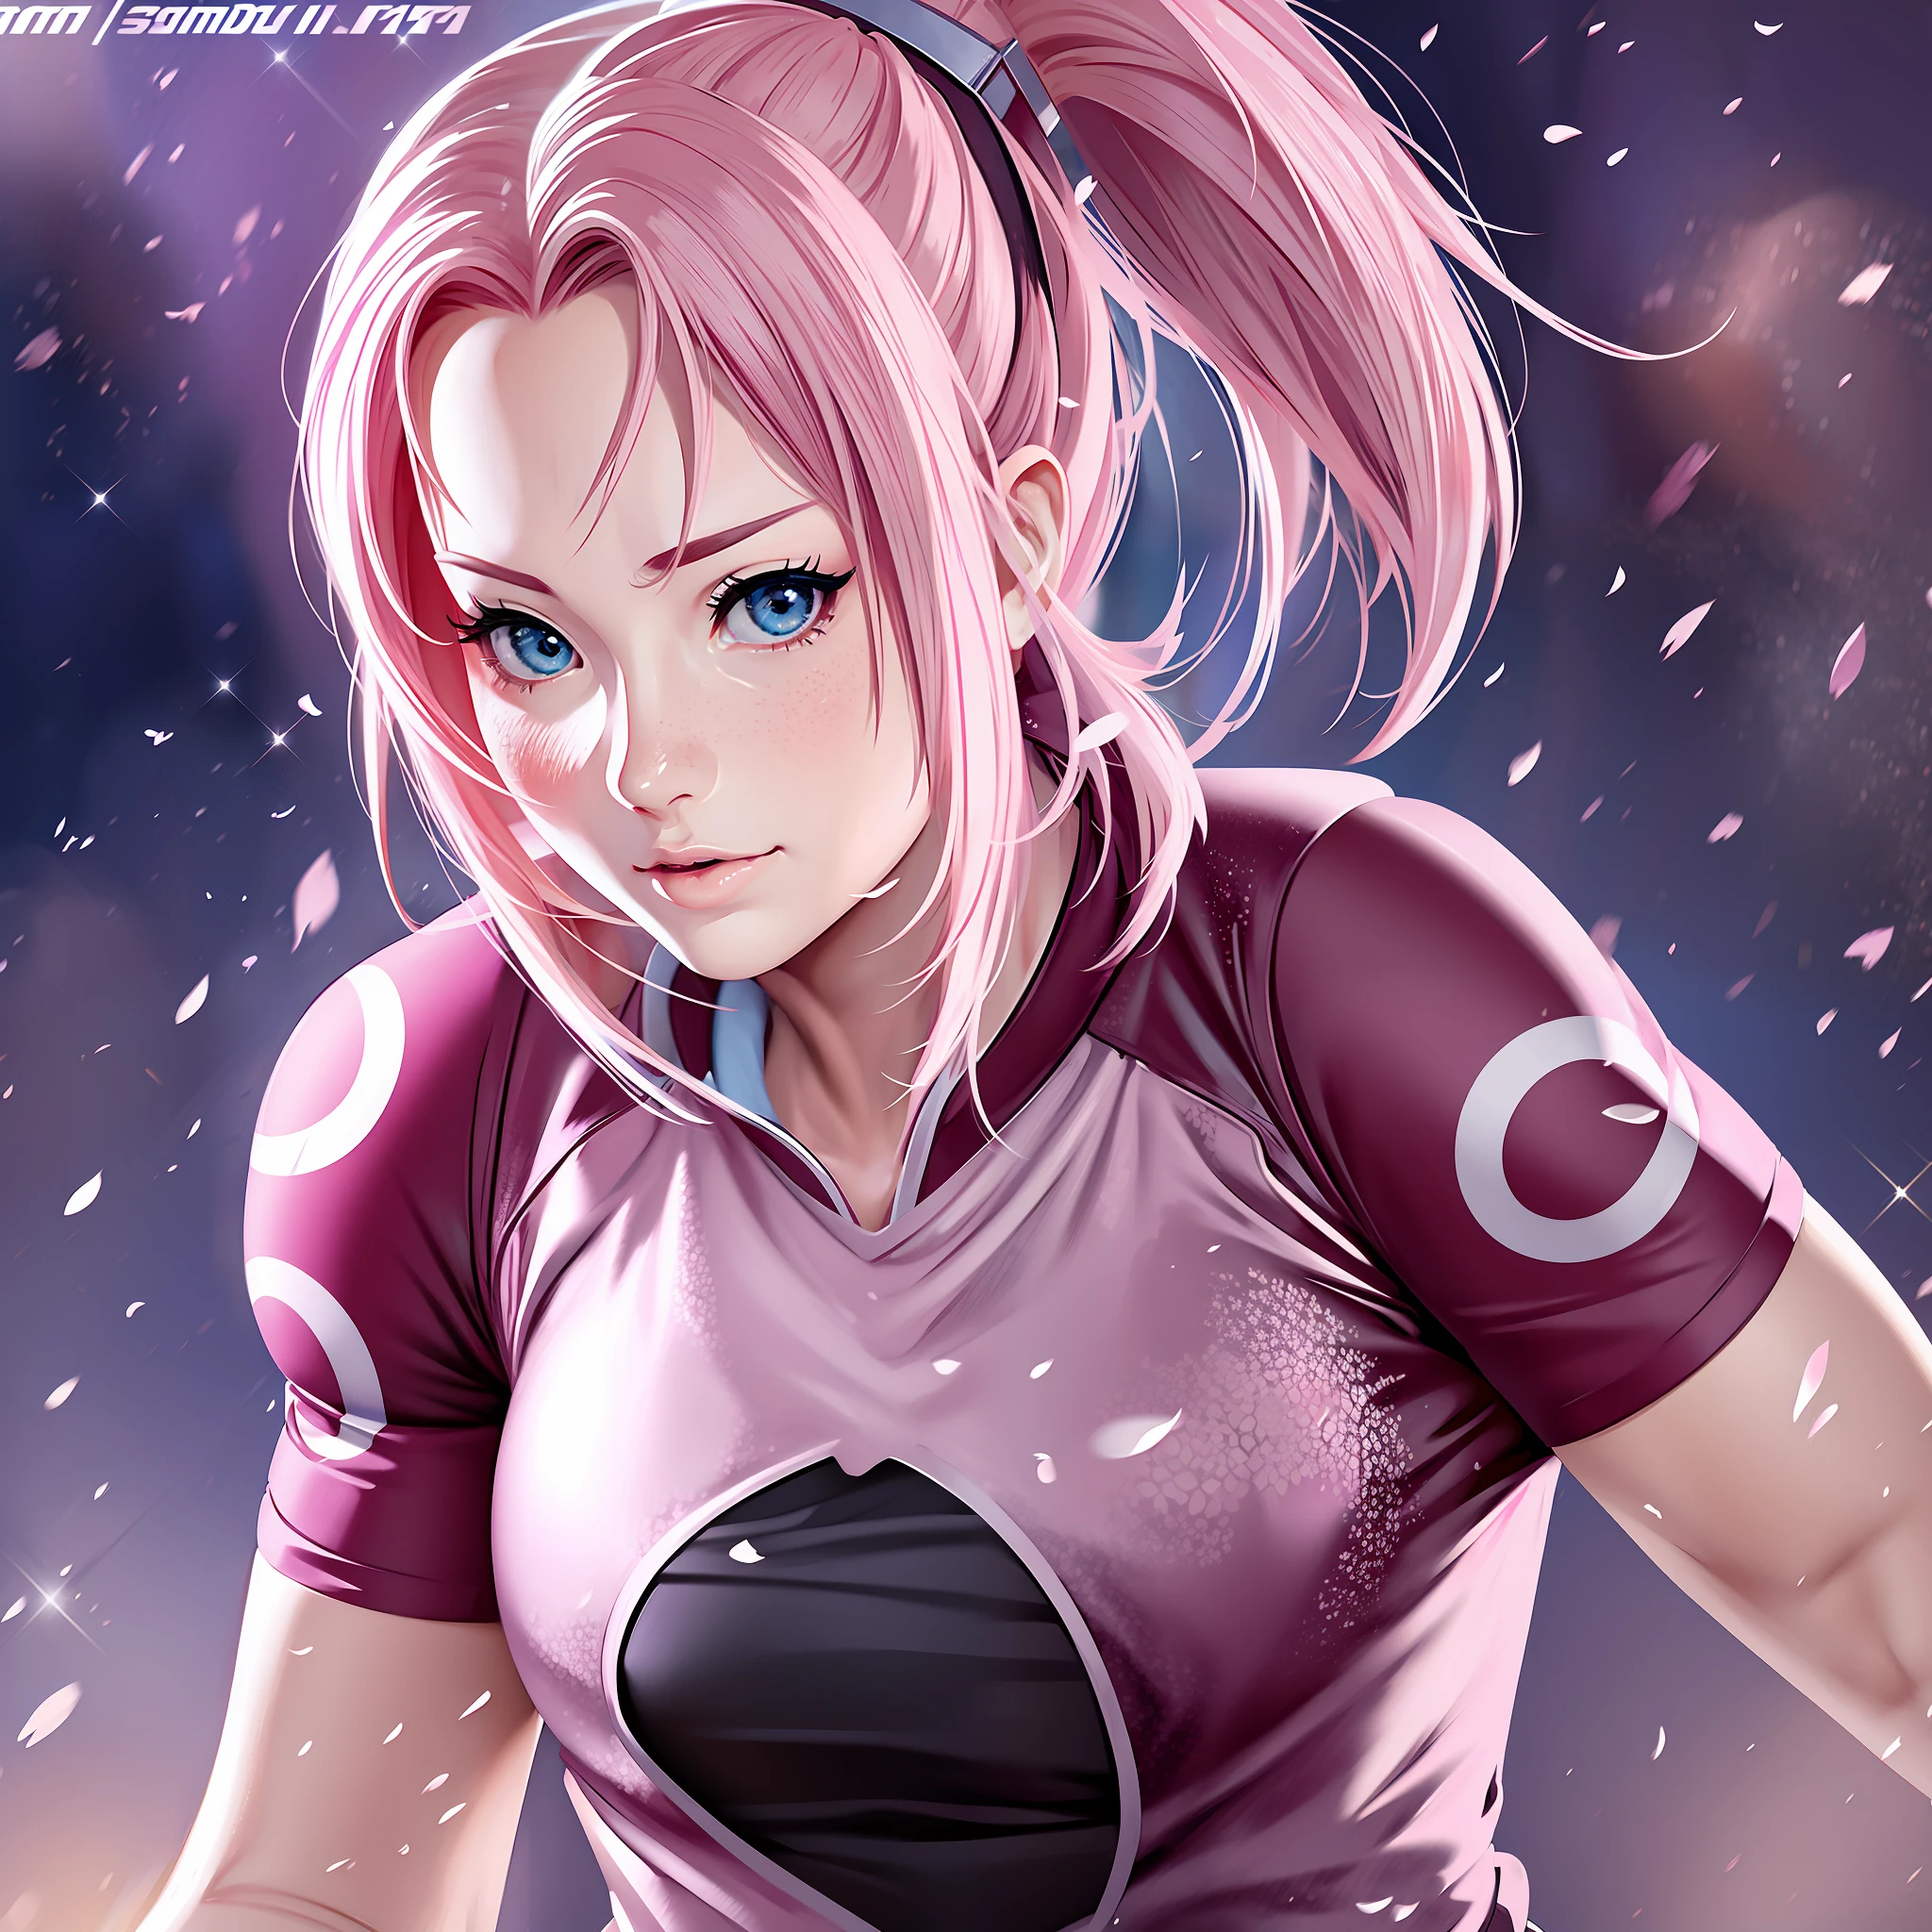 Sakura com a camisa de futebol pose sexy anime super realista e bem detalhada